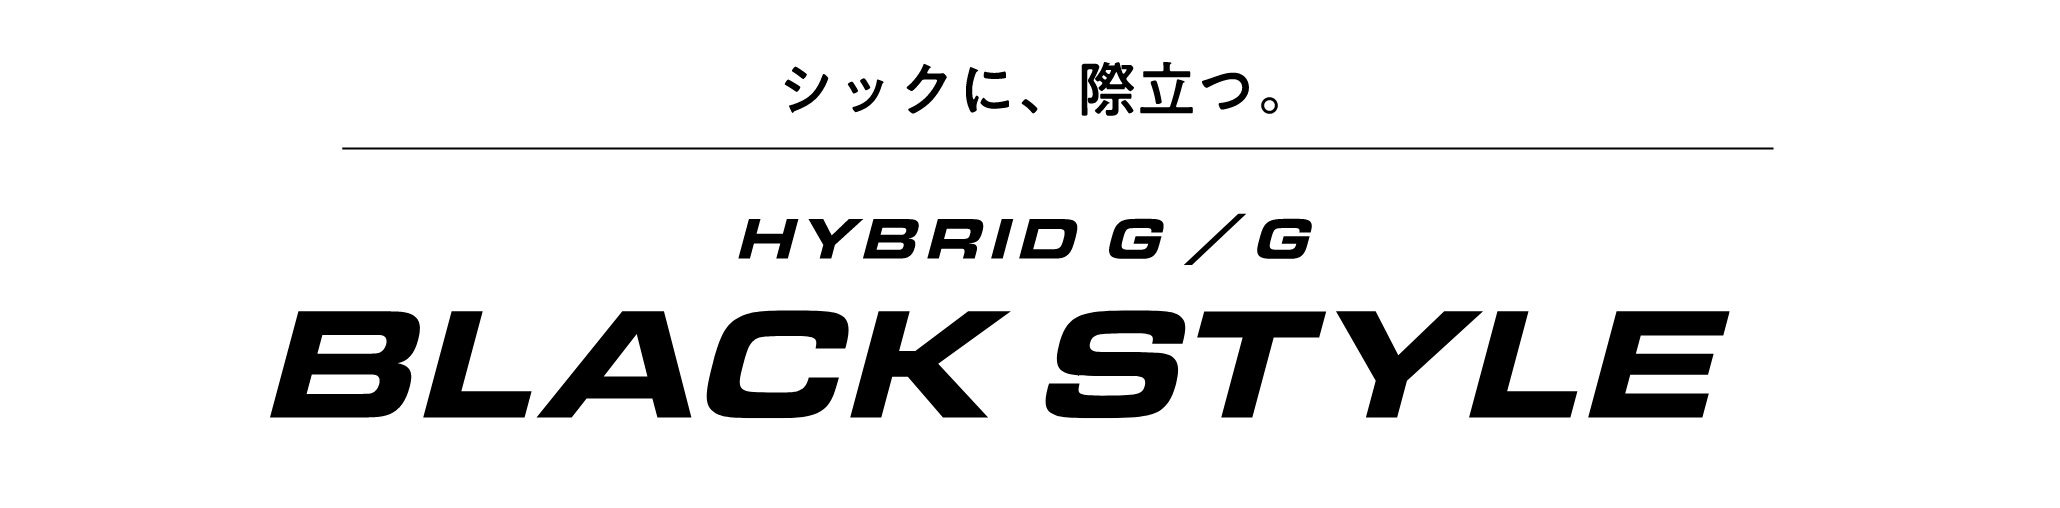 シックに、際立つ。HYBRID G / G BLACK STYLE